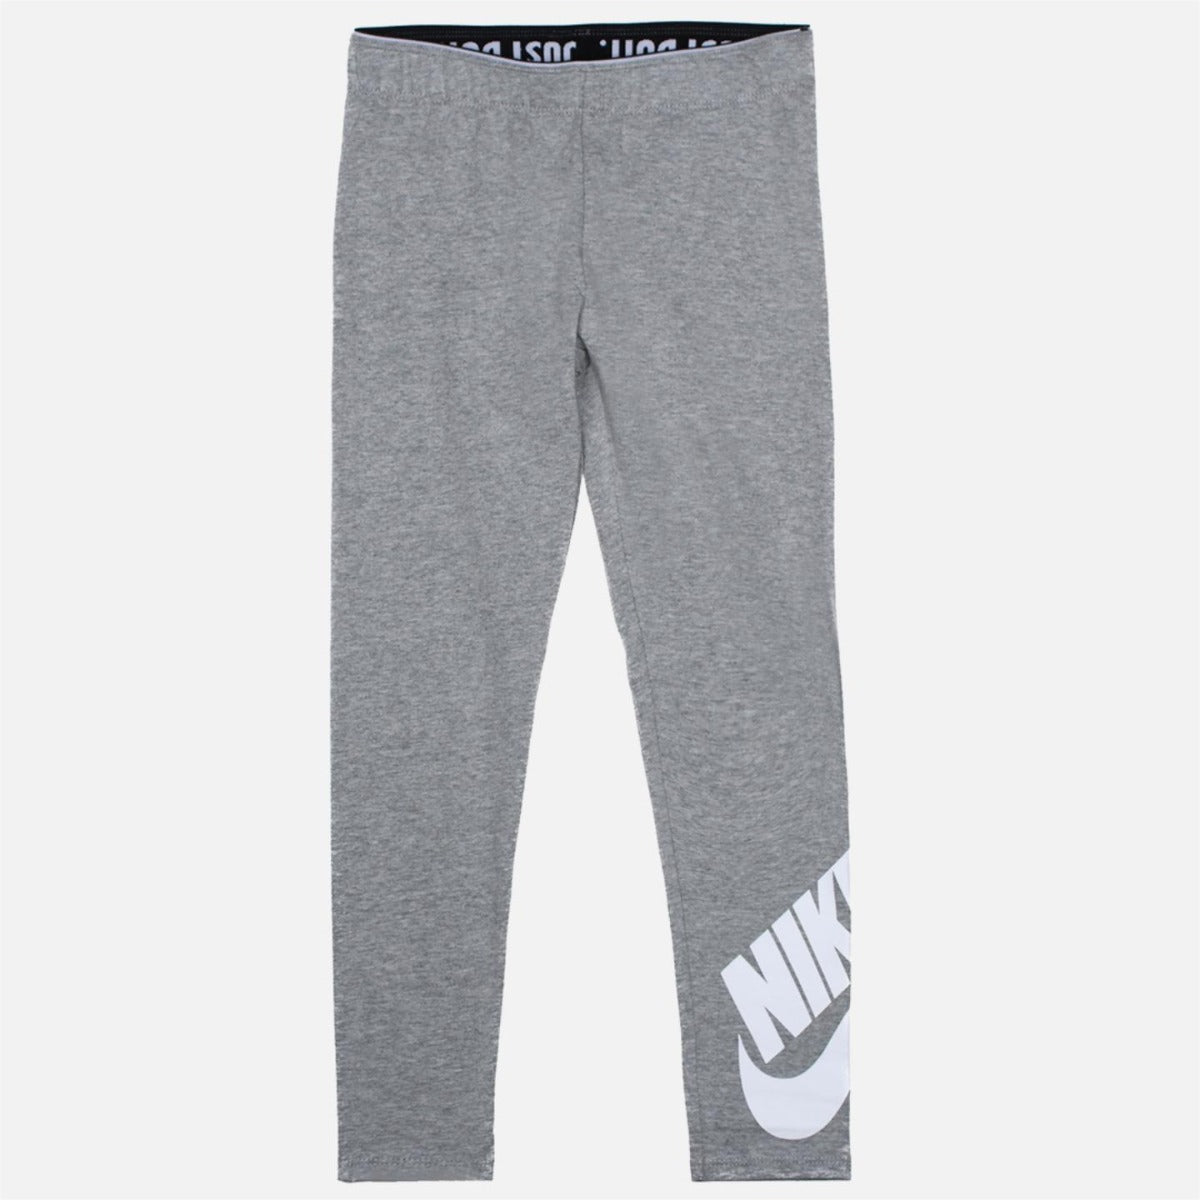 Nike Sportswear Kids Girls Leggings - Gray